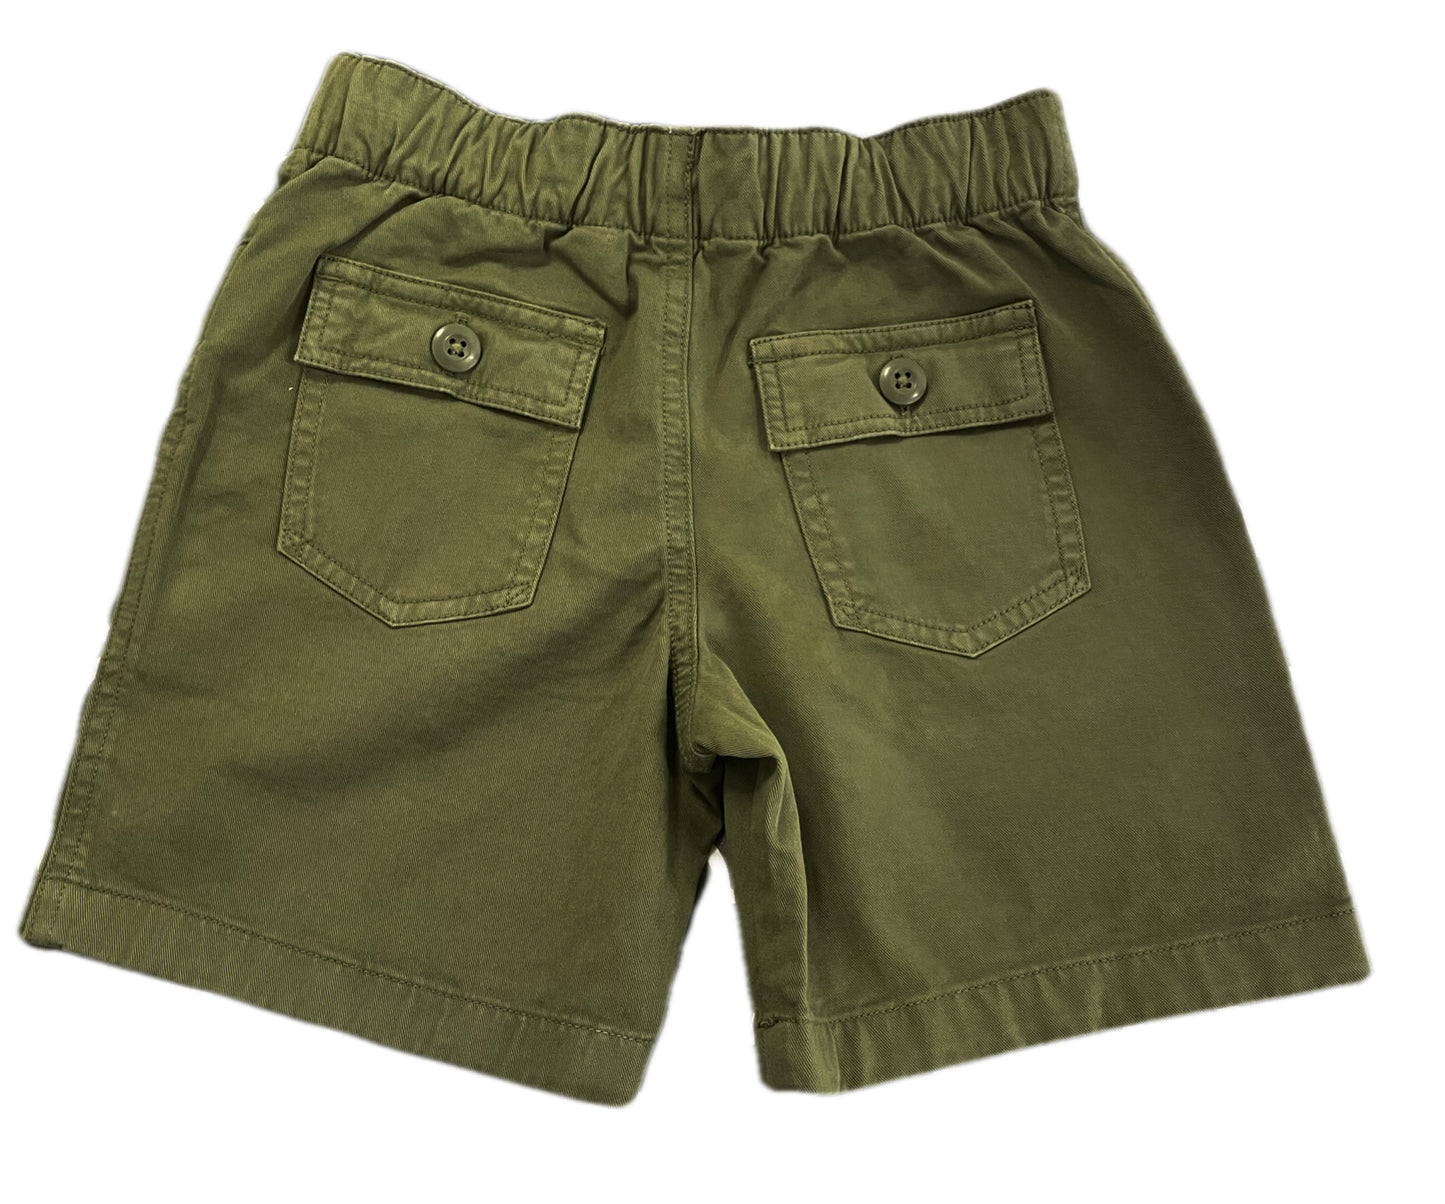 Polo Boys green shorts